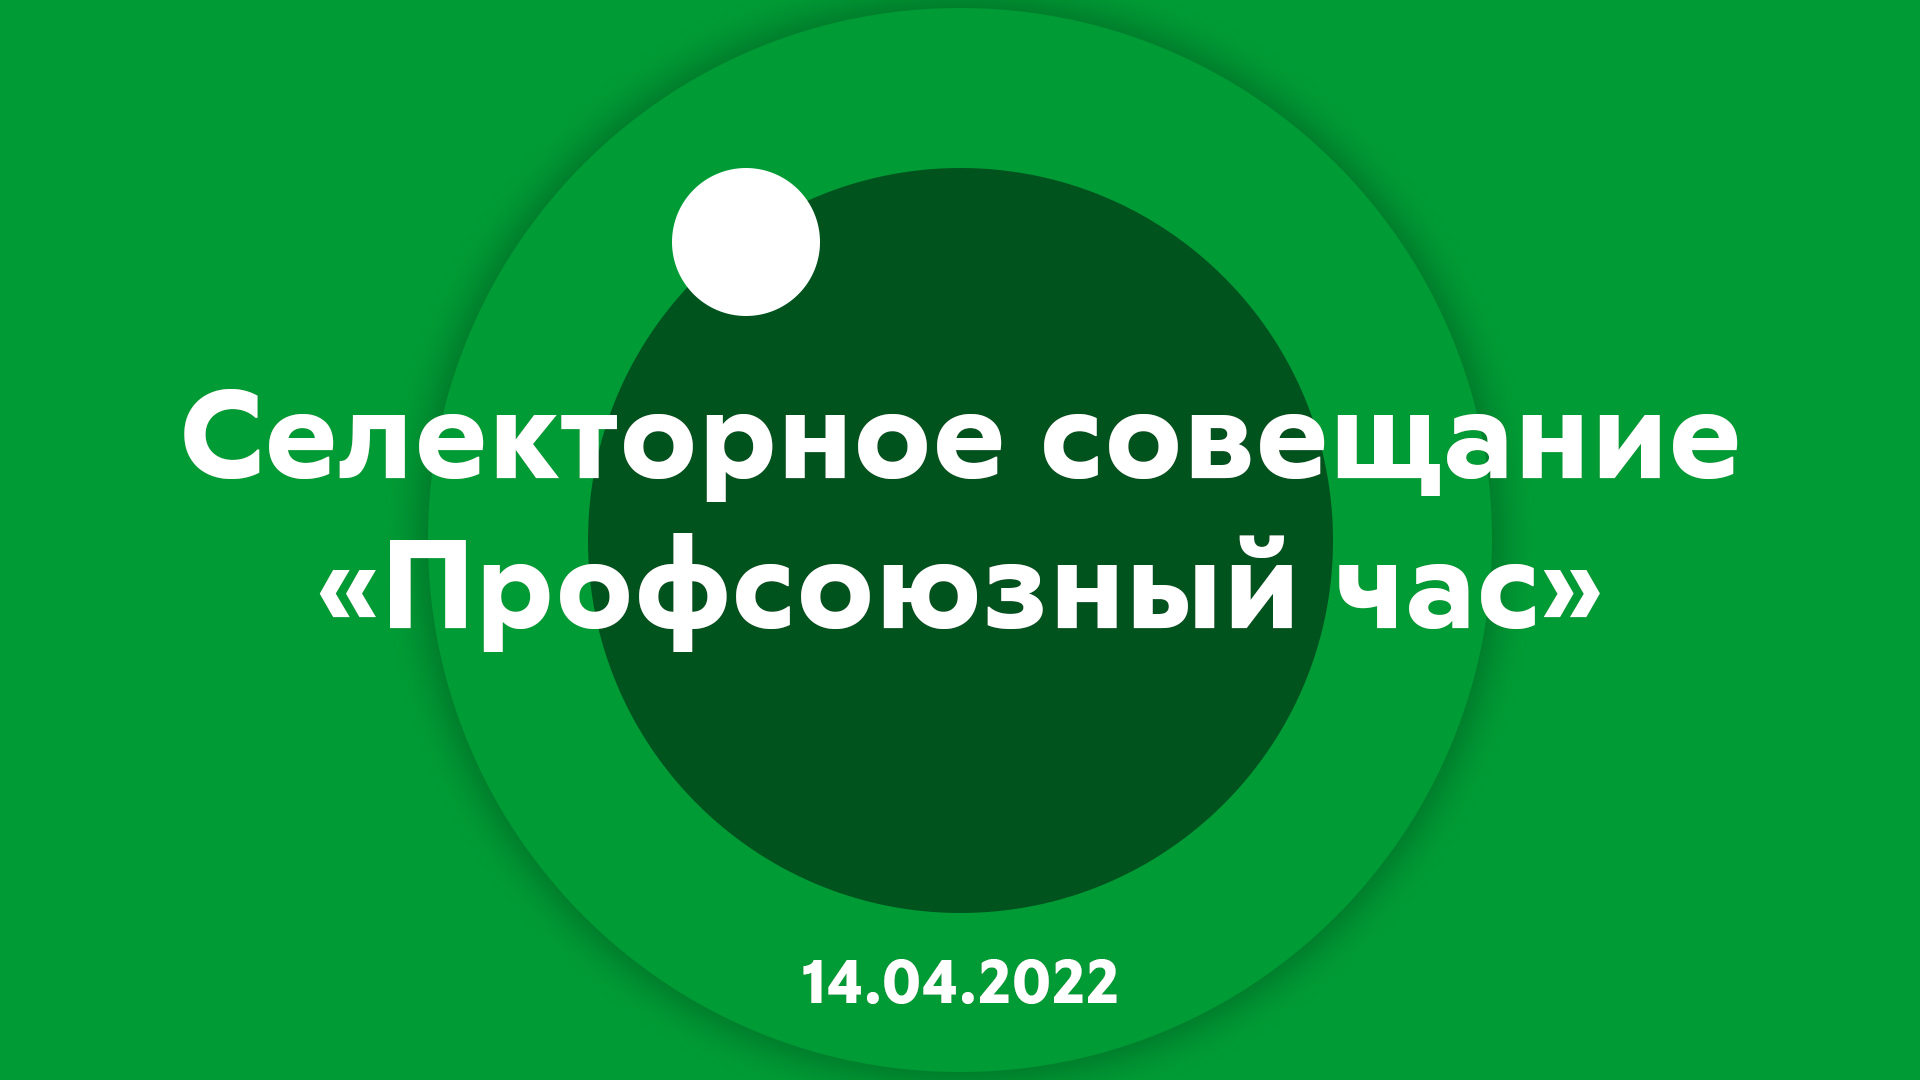 Селекторное совещание "Профсоюзный час" 14.04.2022